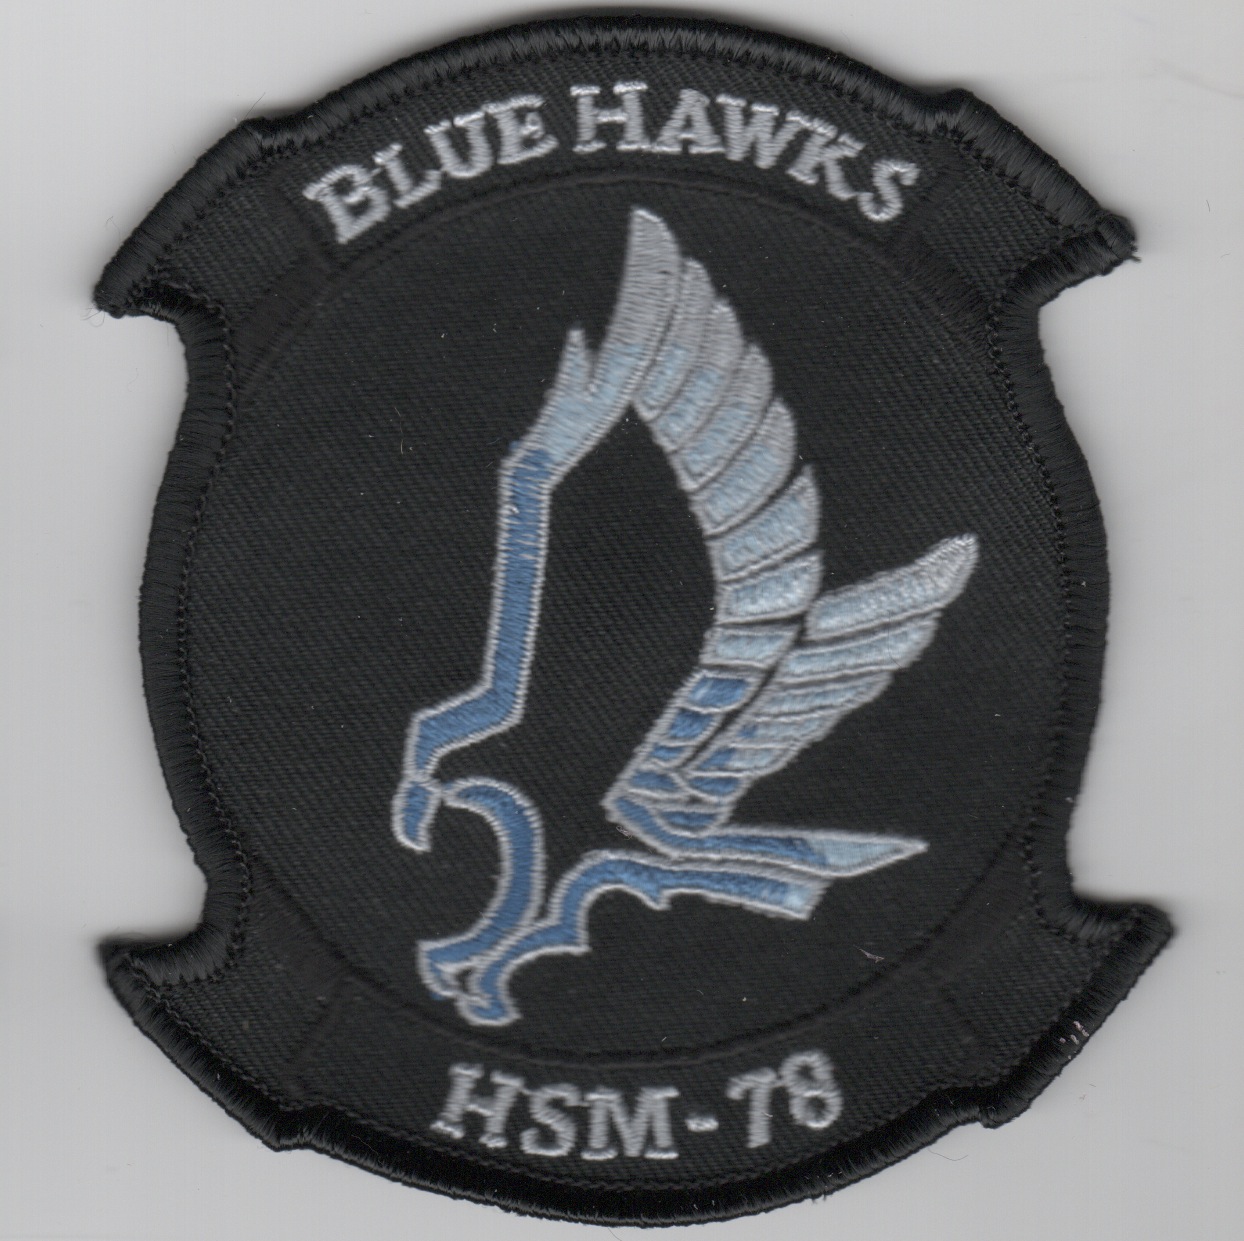 HSM-78 Squadron Patch (Black)